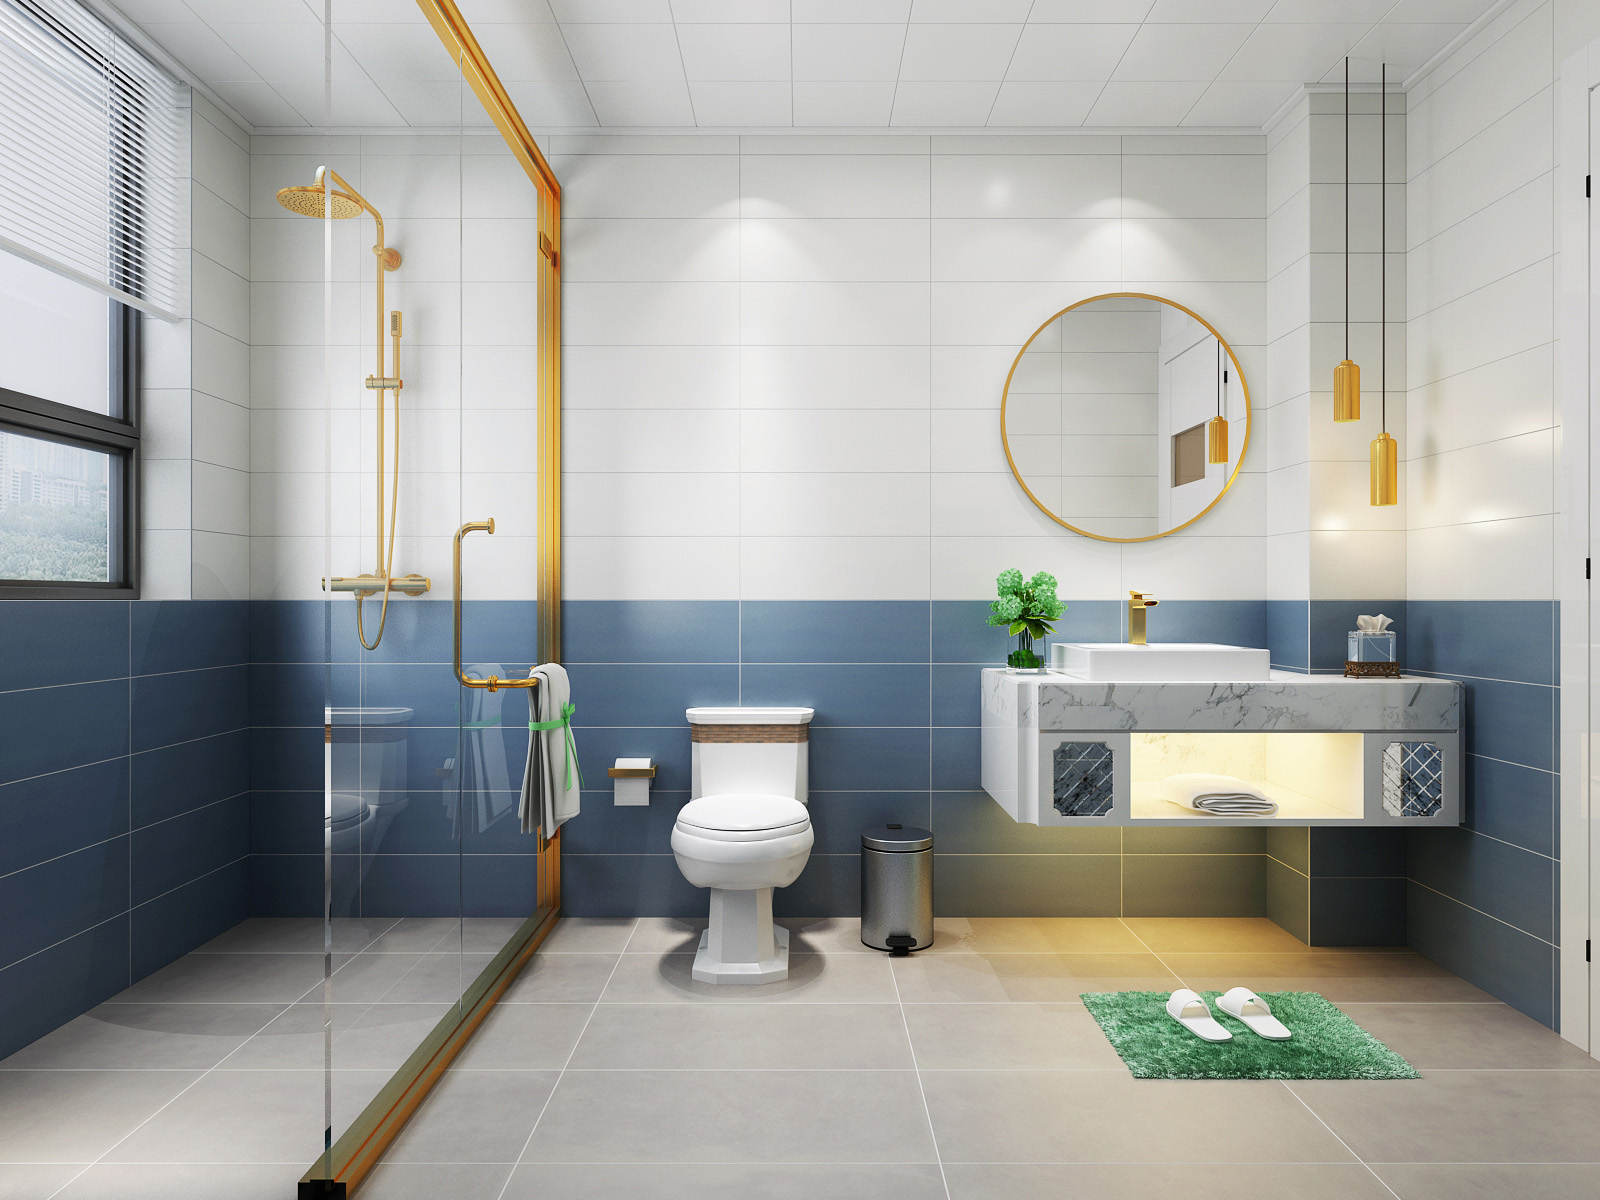 淡蓝色传统厕所 库存图片. 图片 包括有 浴室, 化学制品, 壁橱, 杀菌剂, 蓝色, 舒适, 印度尼西亚语 - 240498197